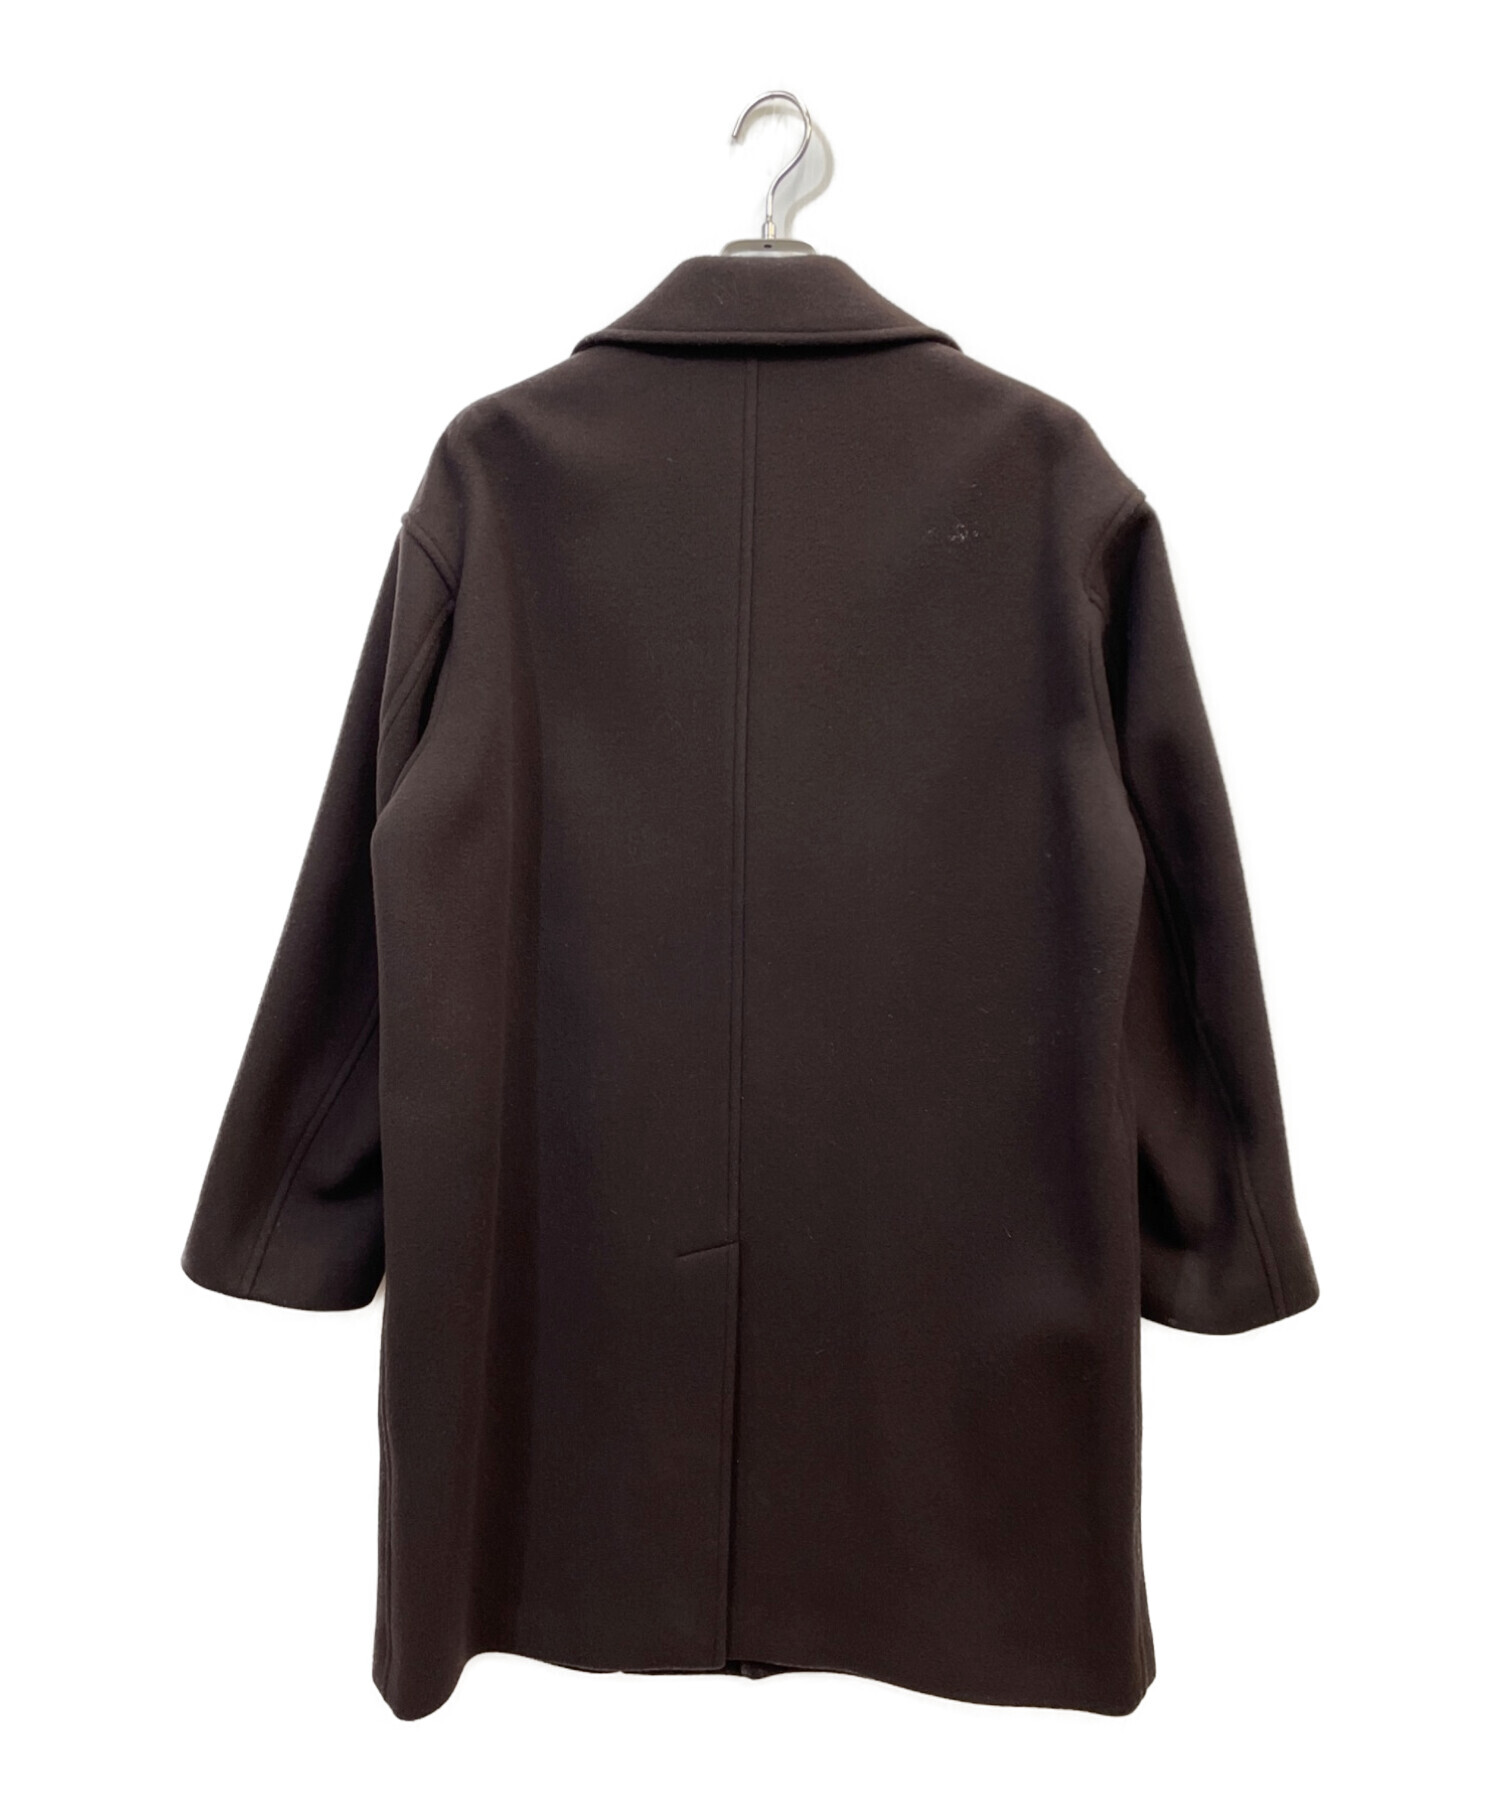 ユナイテッドアローズAURALEE DOUBLE CLOTH LIGHT MELTON COAT